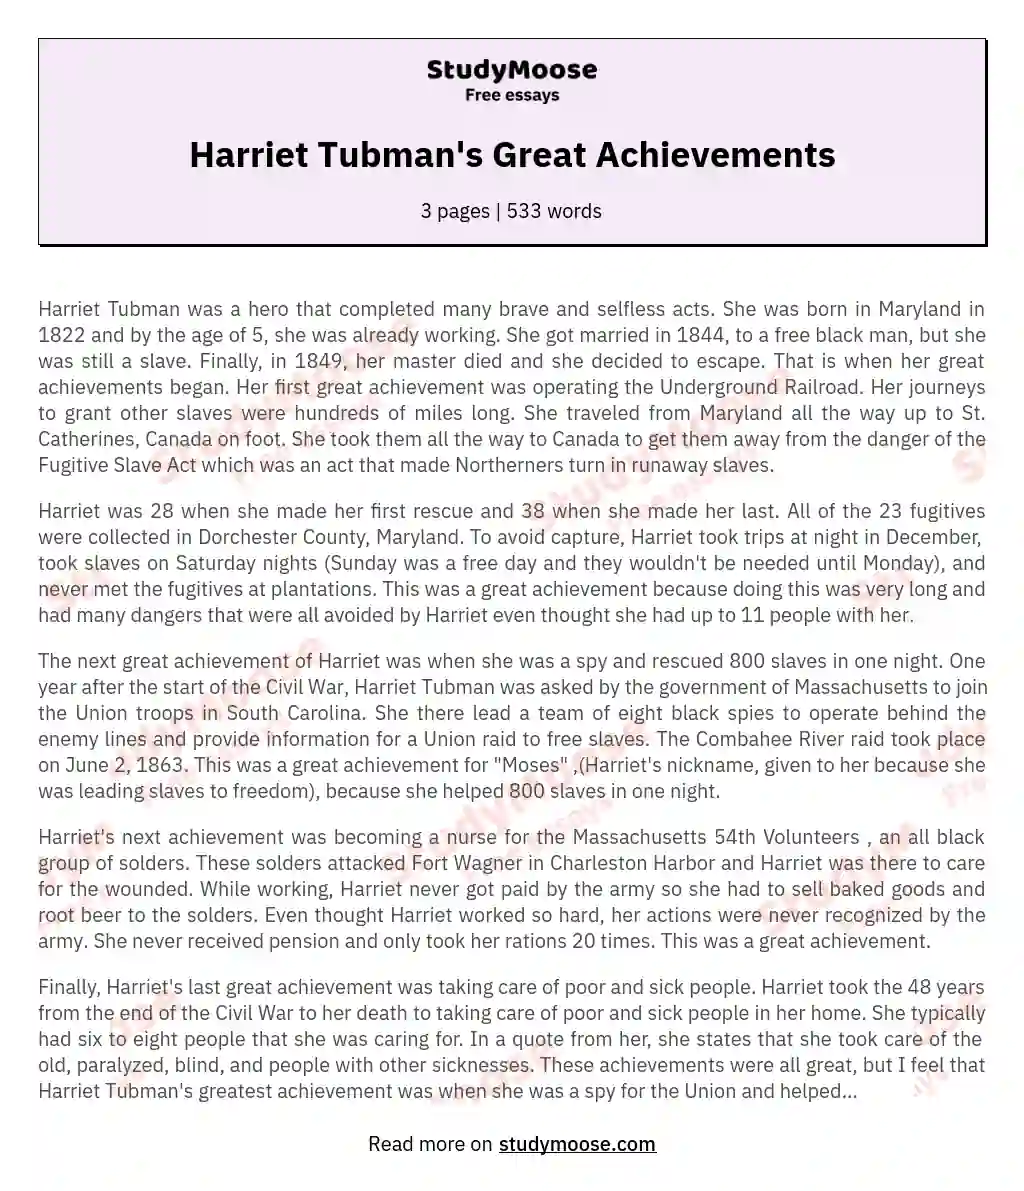 Harriet Tubman's Great Achievements essay